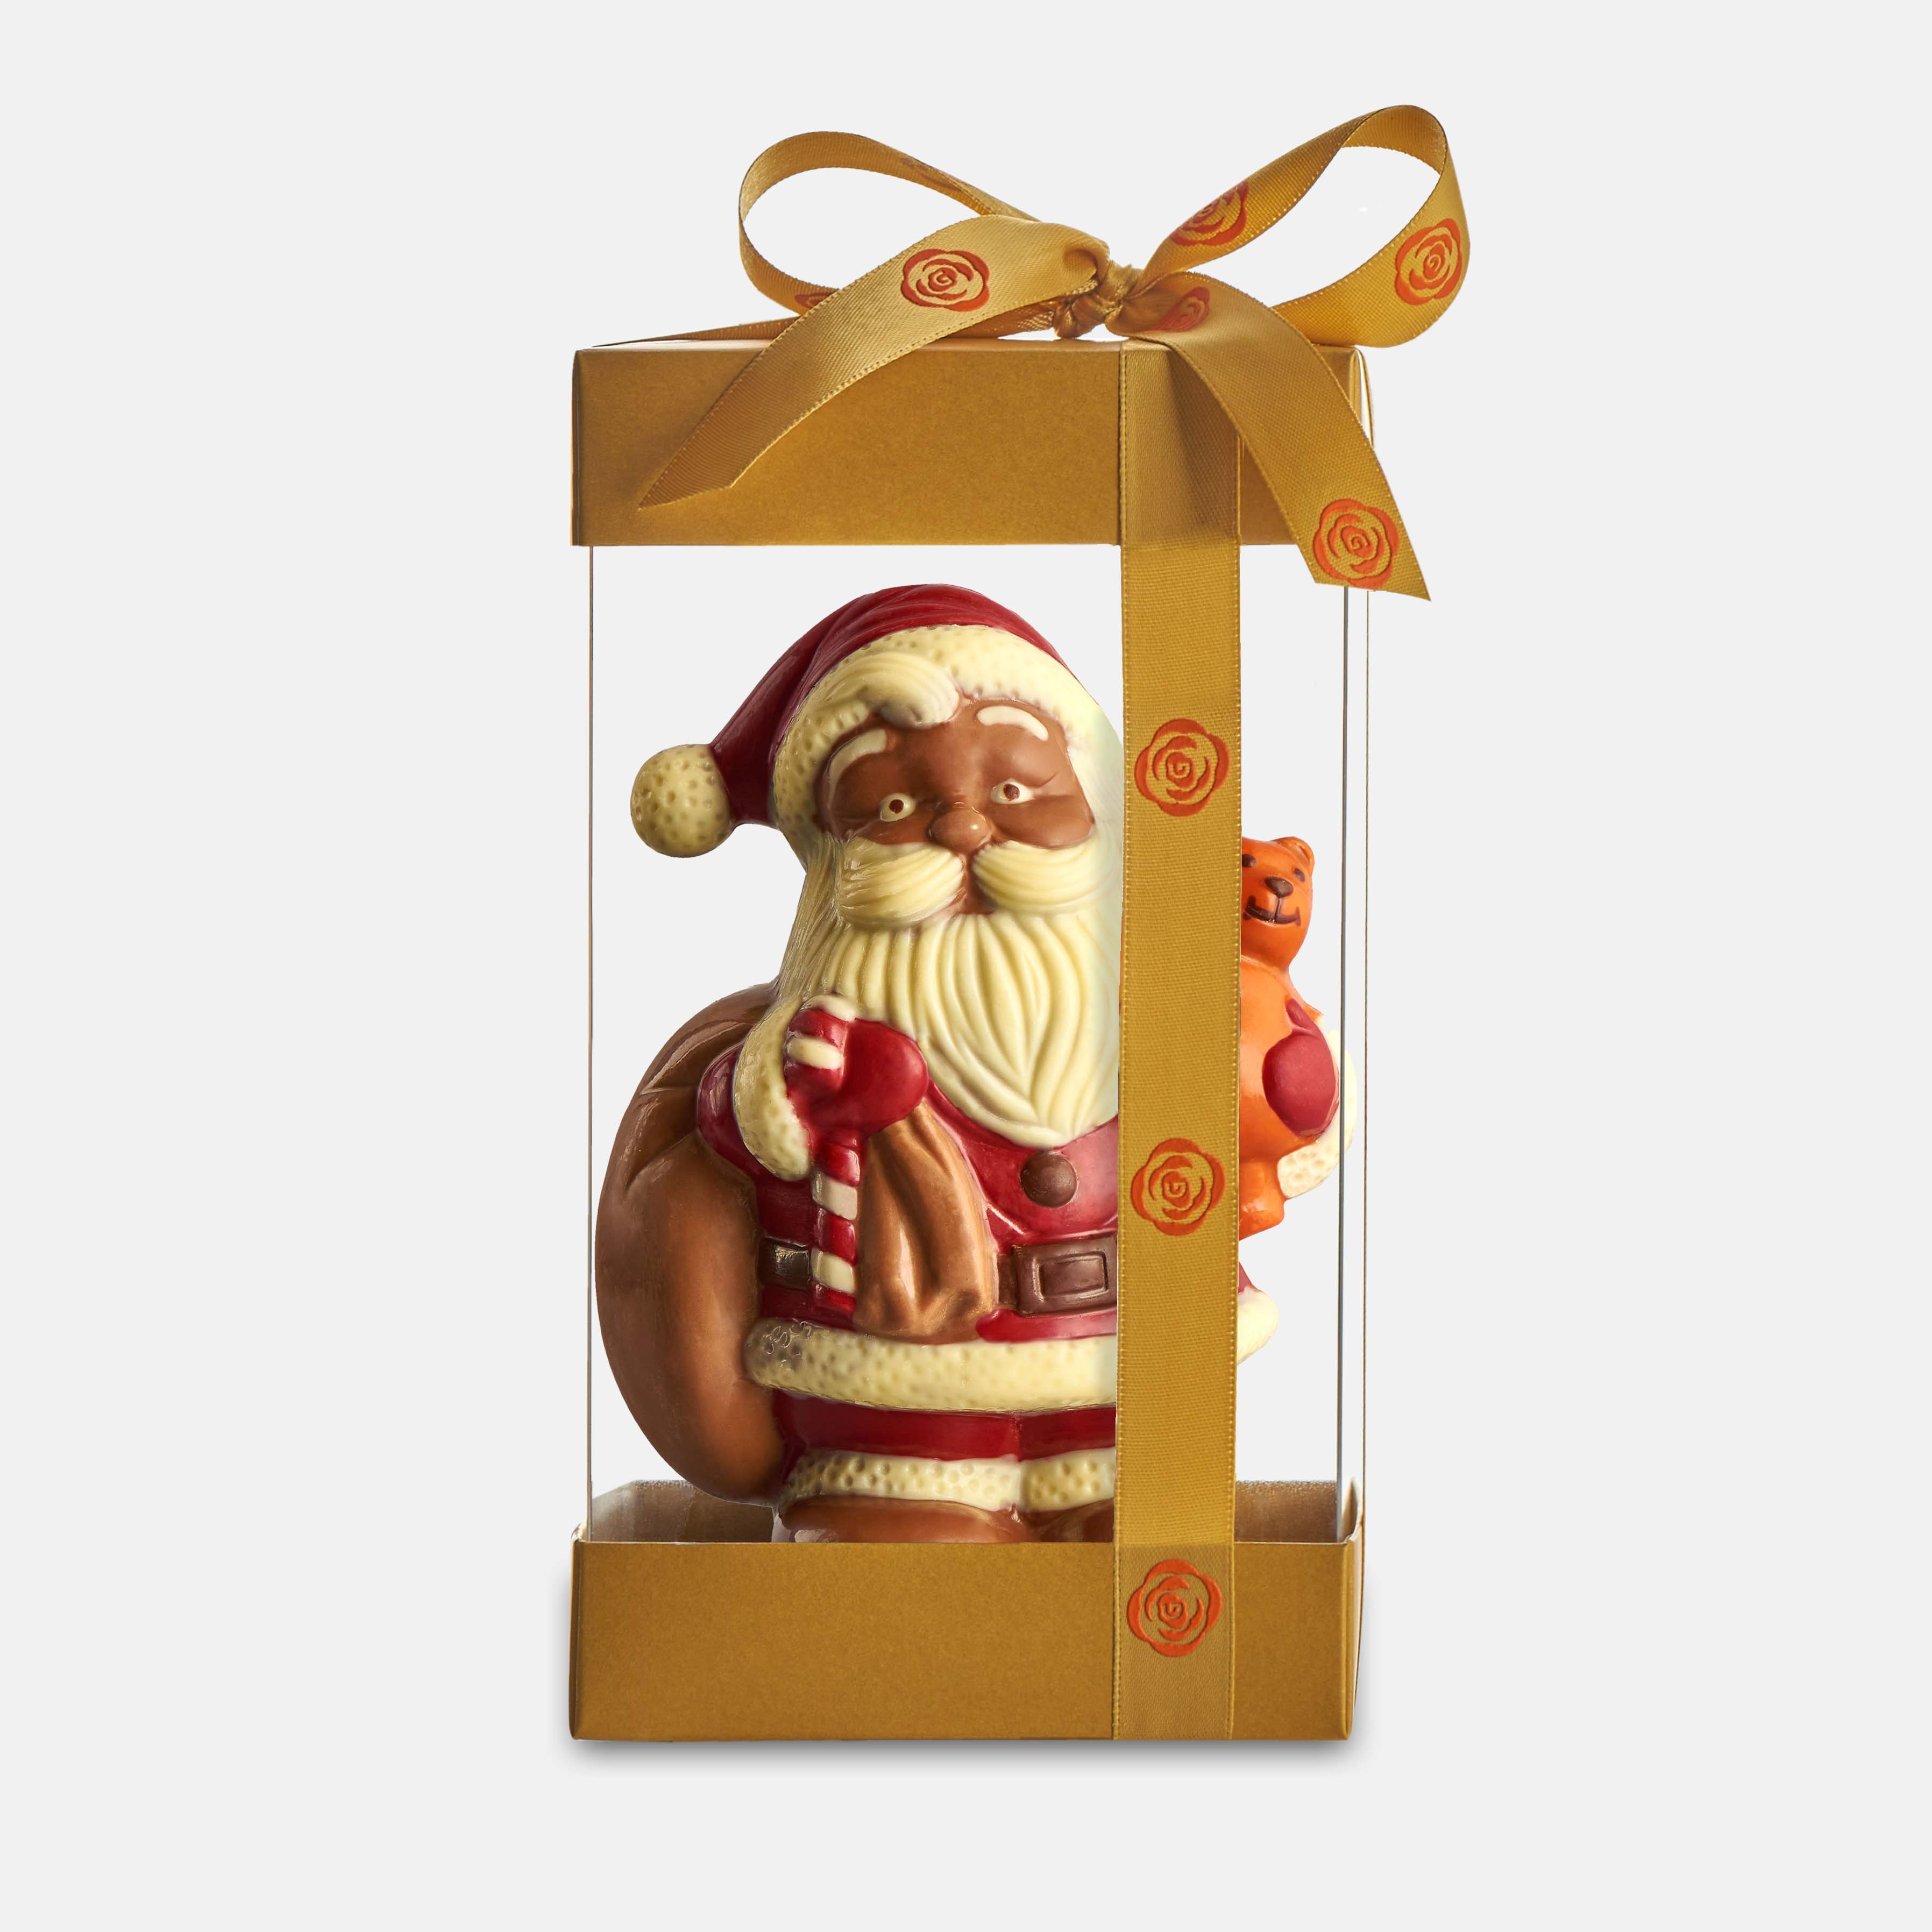 Chocolate Santa with a Teddy bear